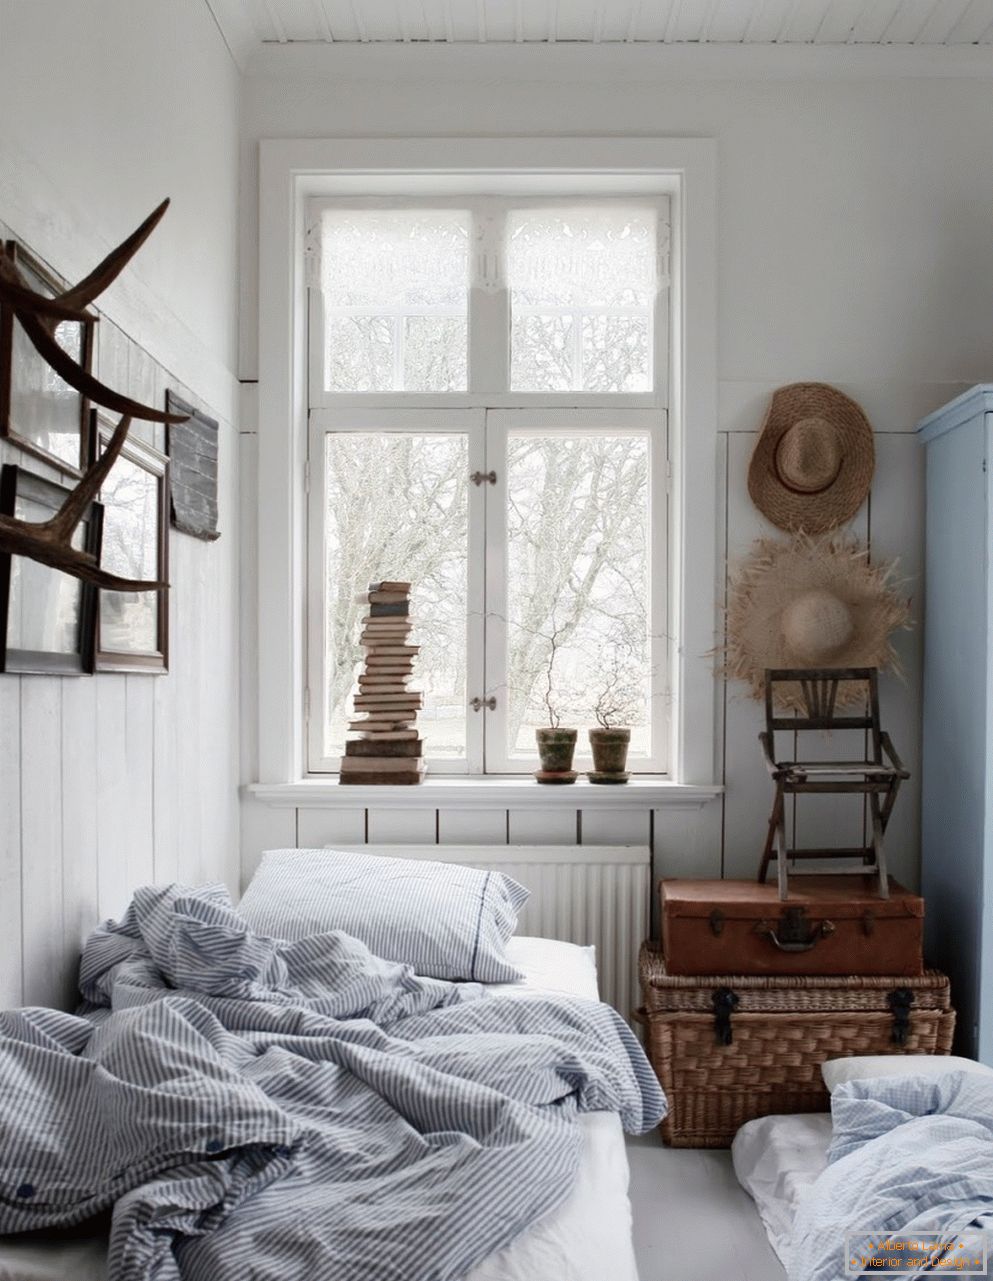 Skandinavski stil u unutrašnjosti spavaće sobe, njegove karakteristike i karakteristike